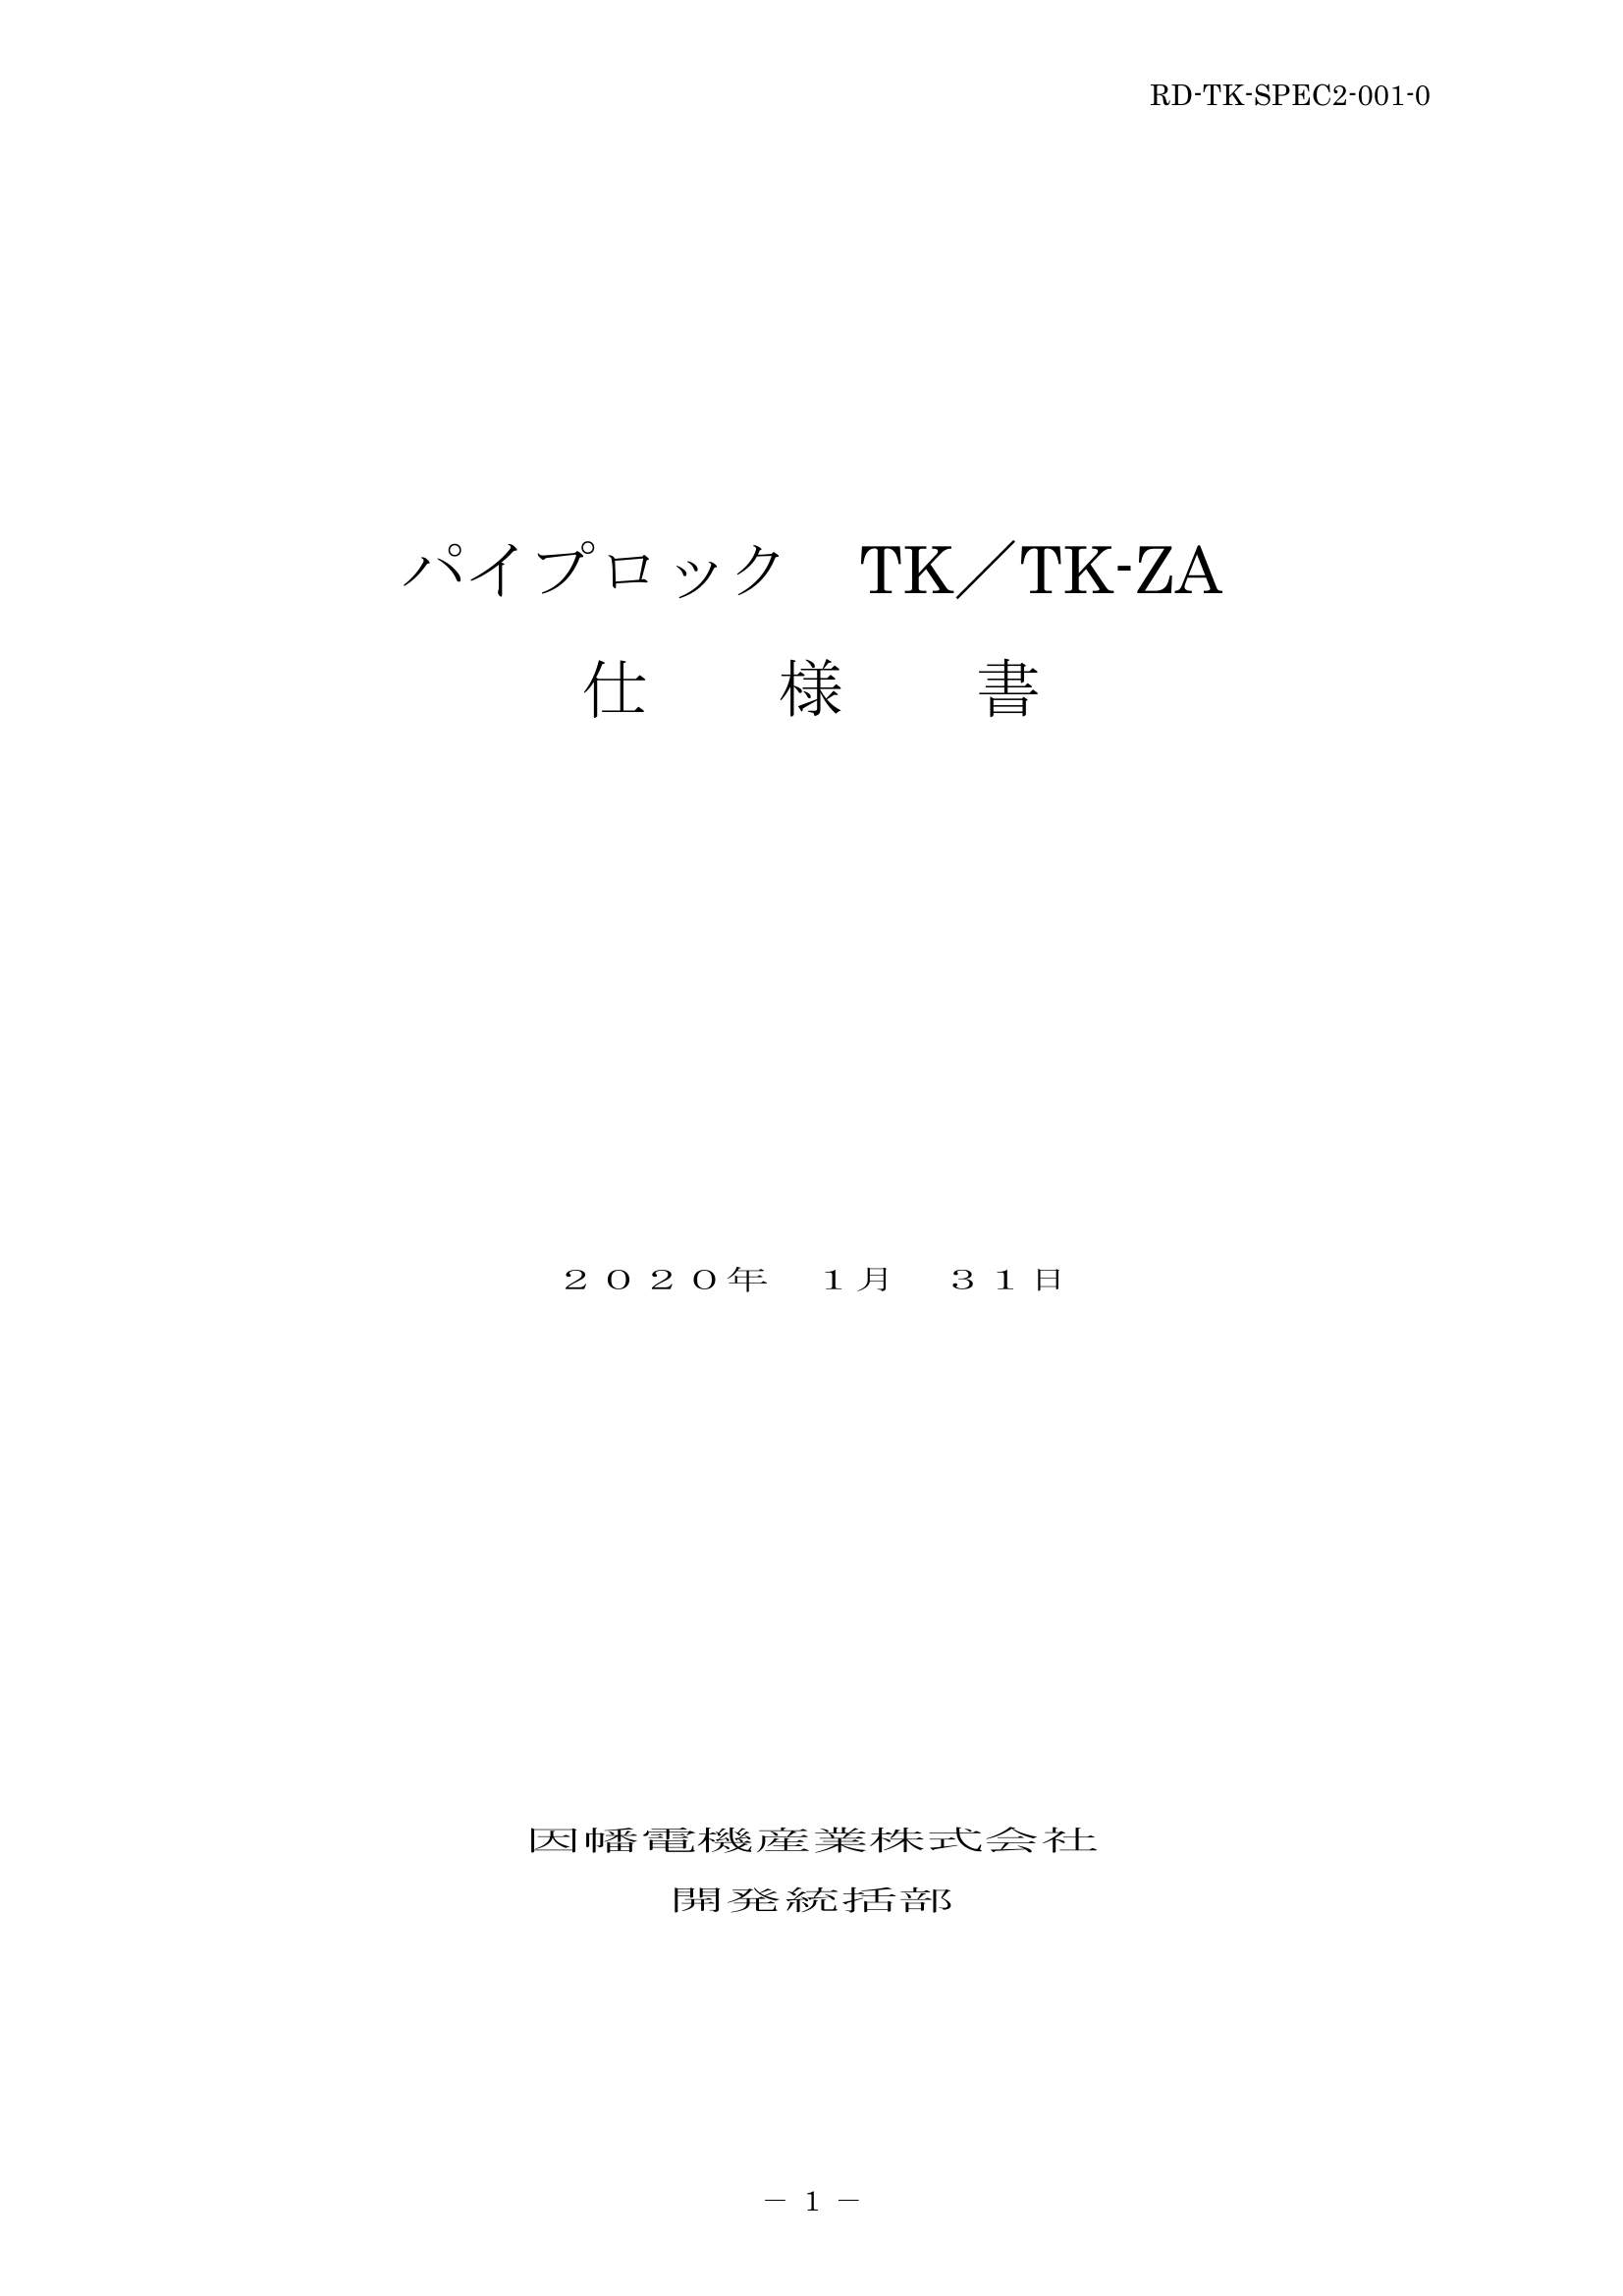 TK_仕様書_20200131.pdf